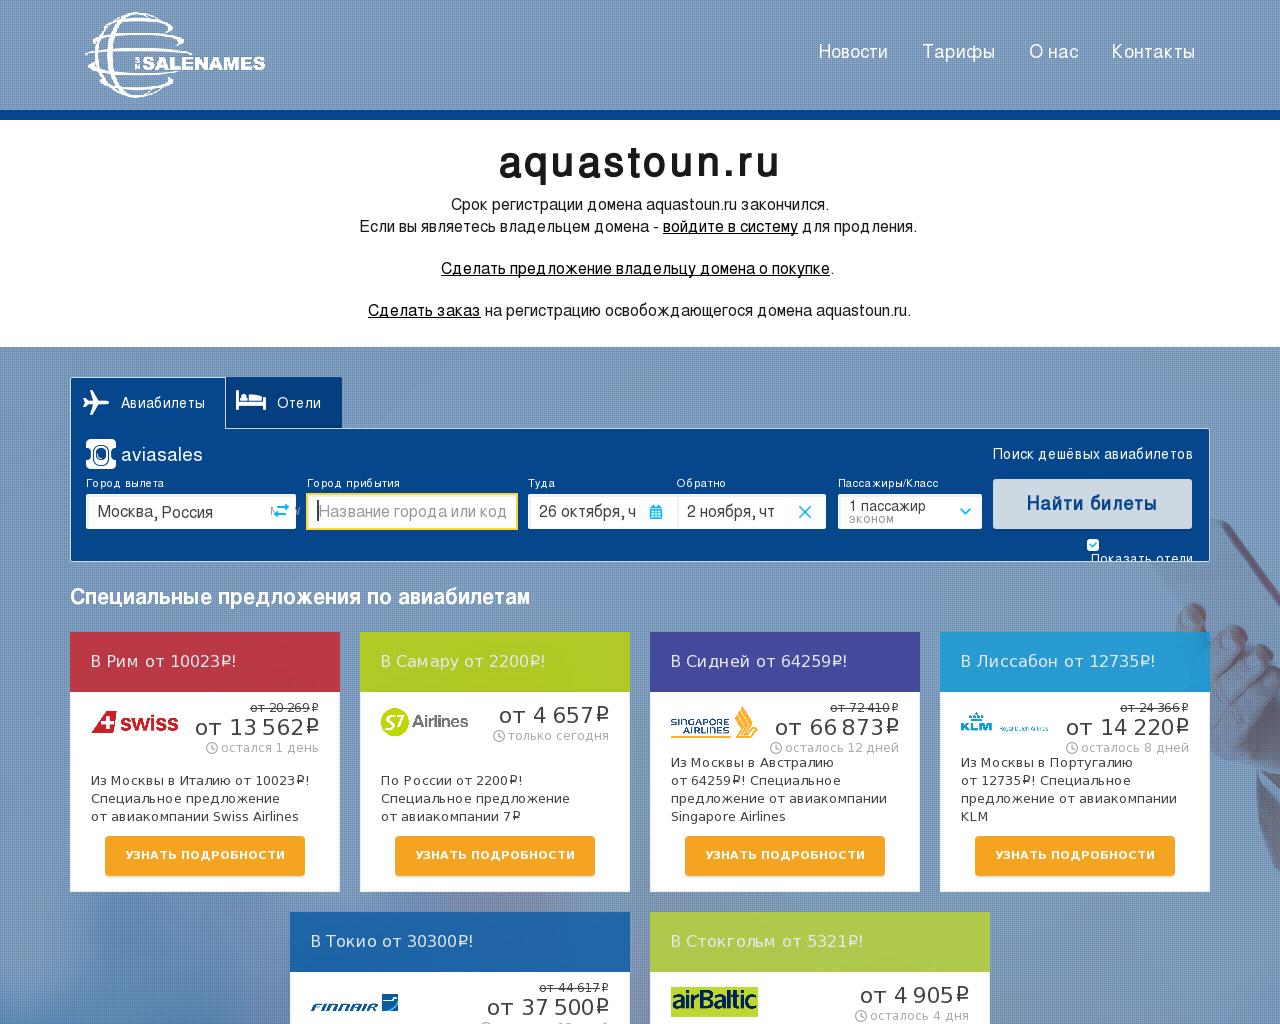 Изображение сайта aquastoun.ru в разрешении 1280x1024